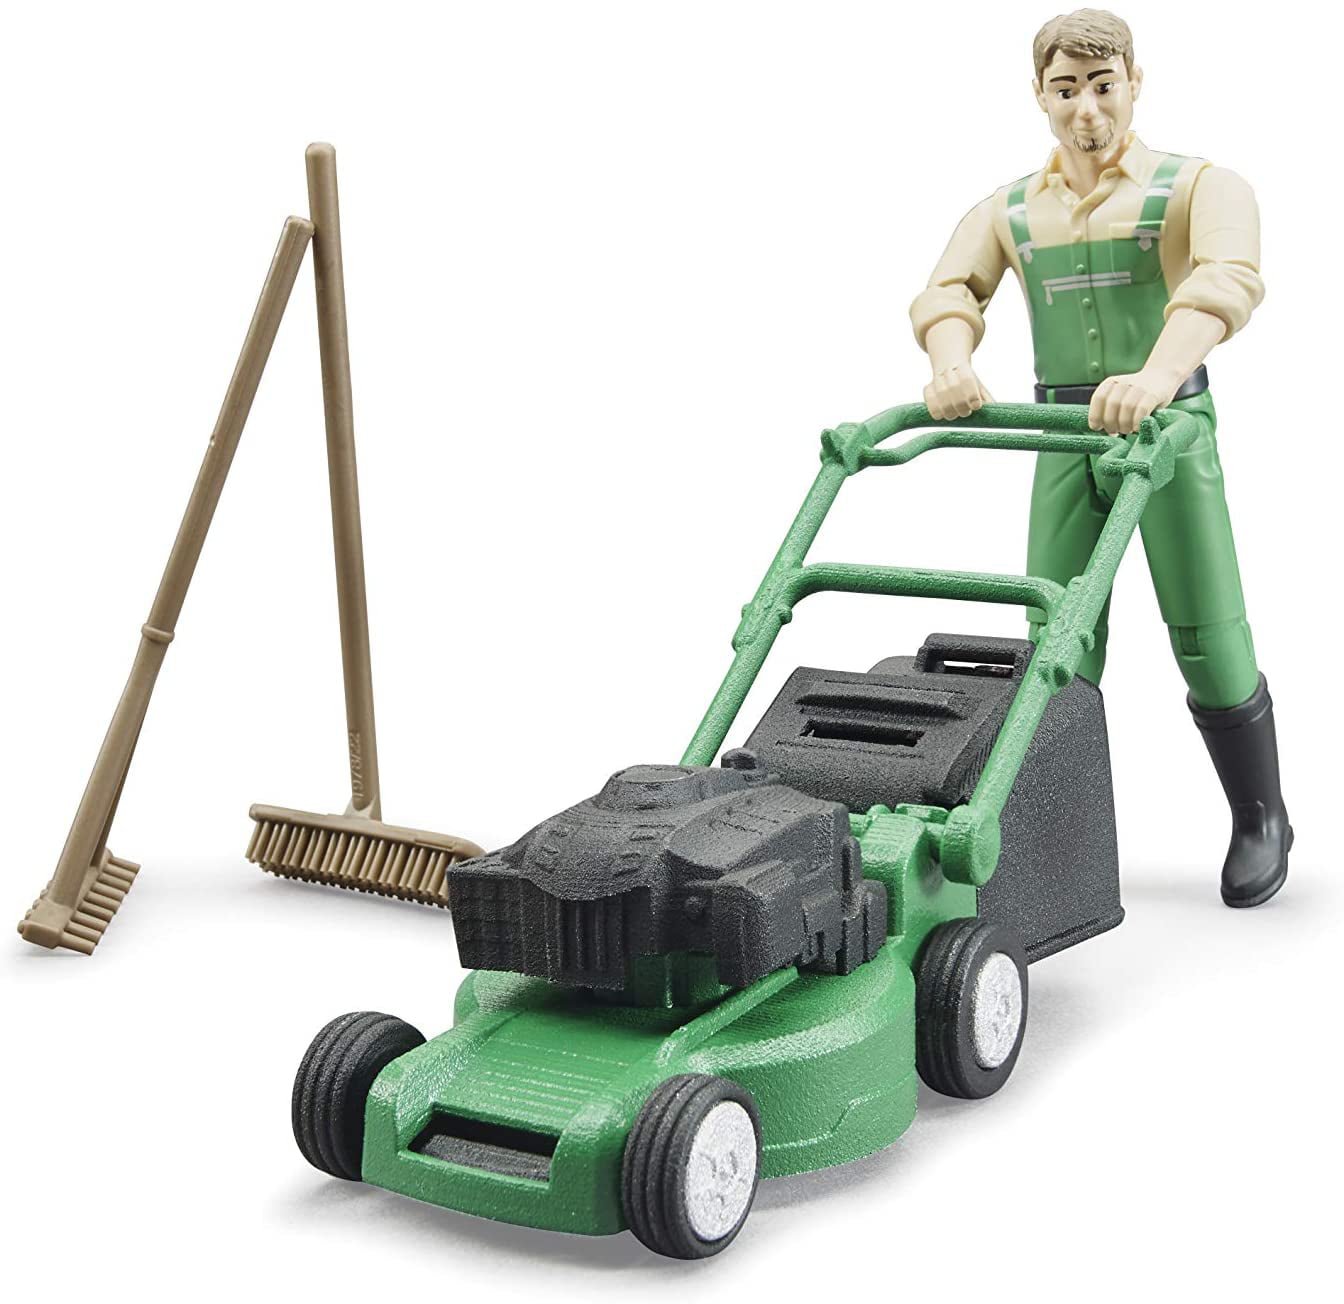 Bruder 62103 bworld Gardener w Lawn Mower and Accessories 